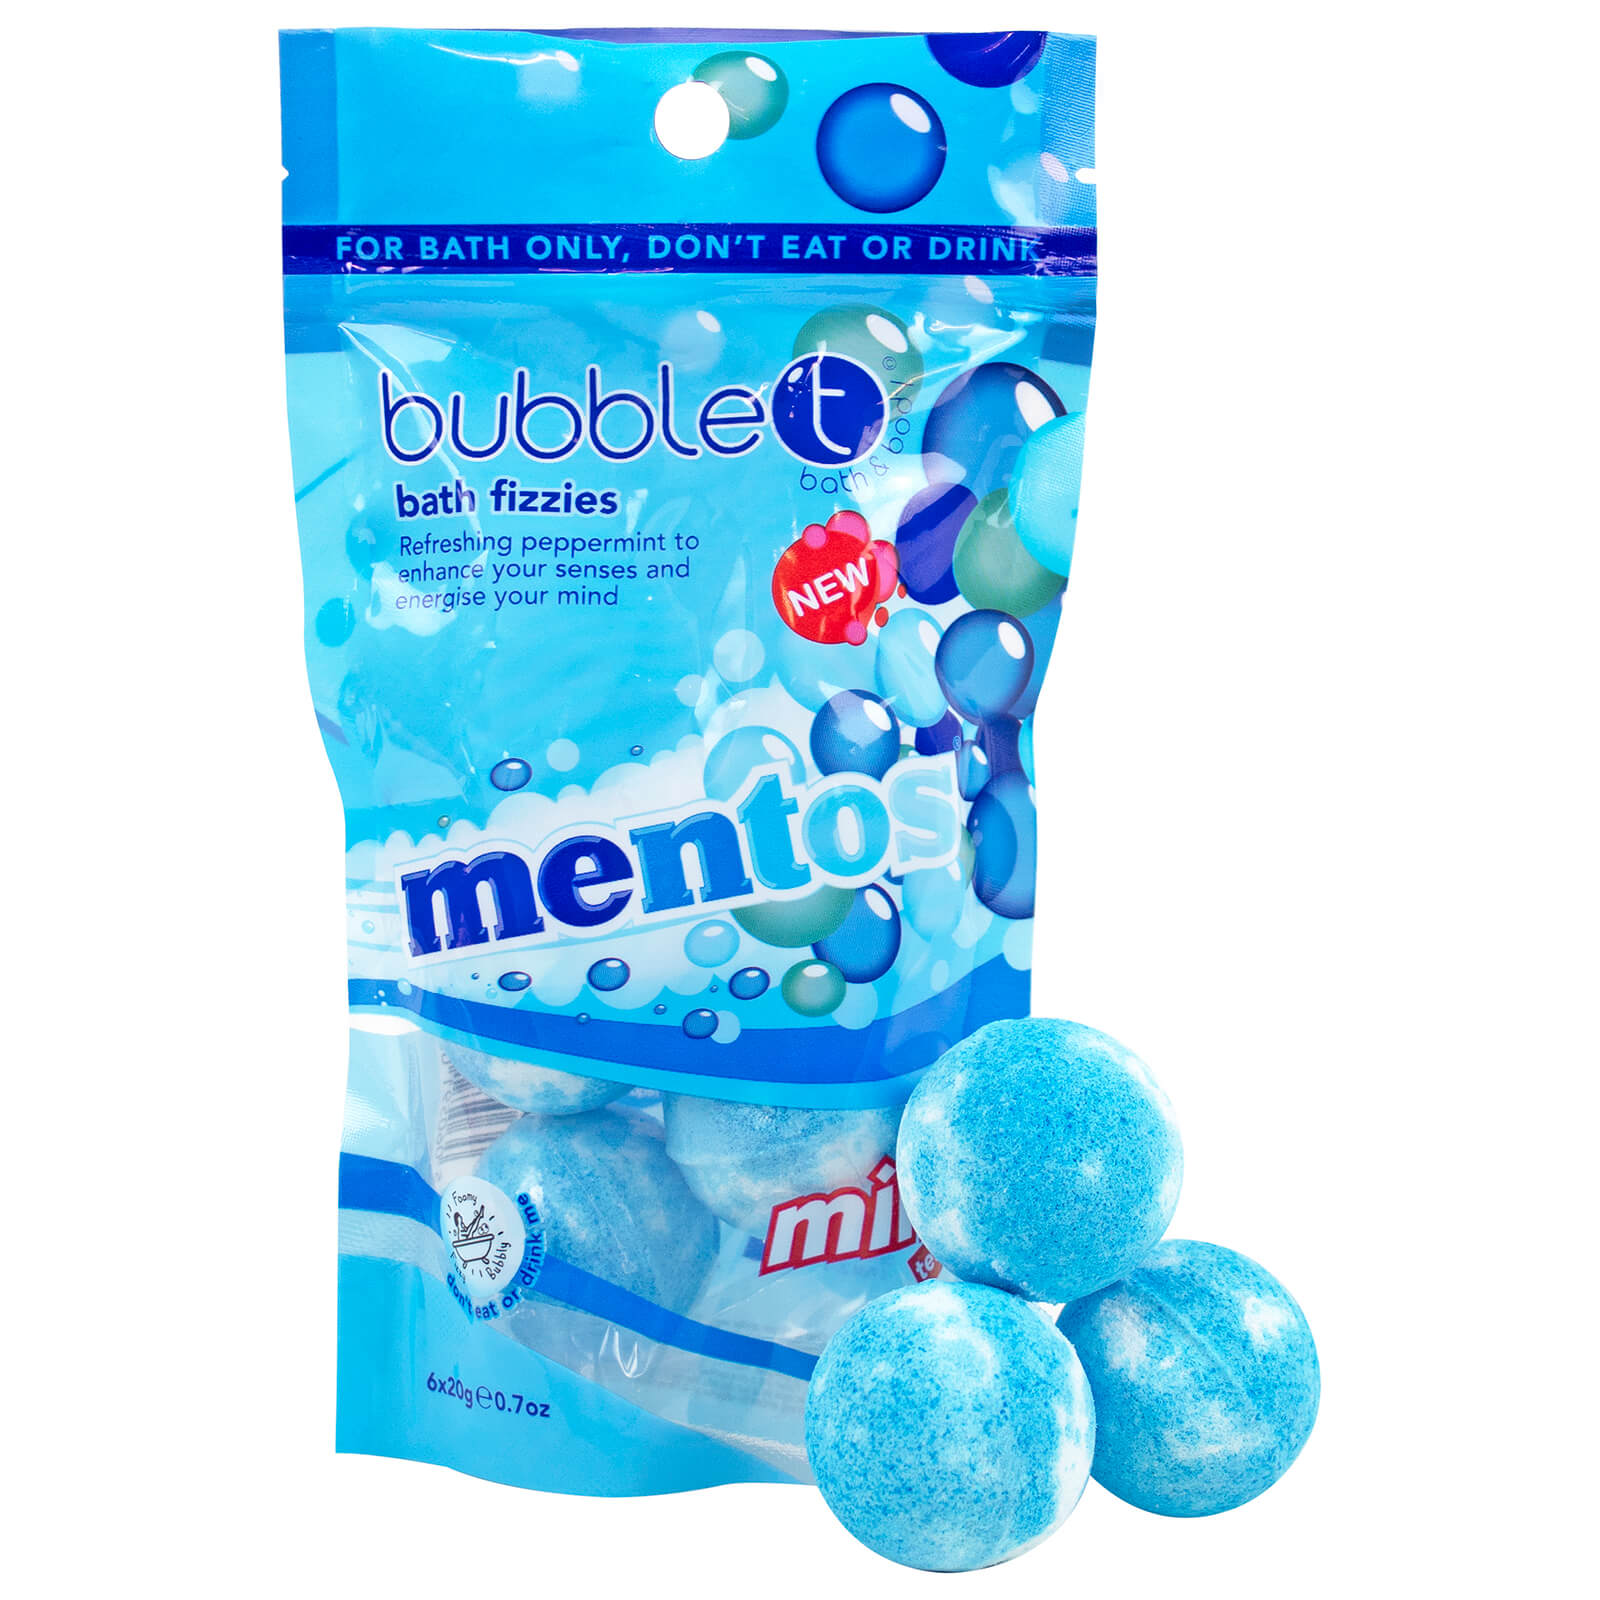 Burbujas de baño mini Mentos Mint Tea de Bubble T (6 x 20 g)